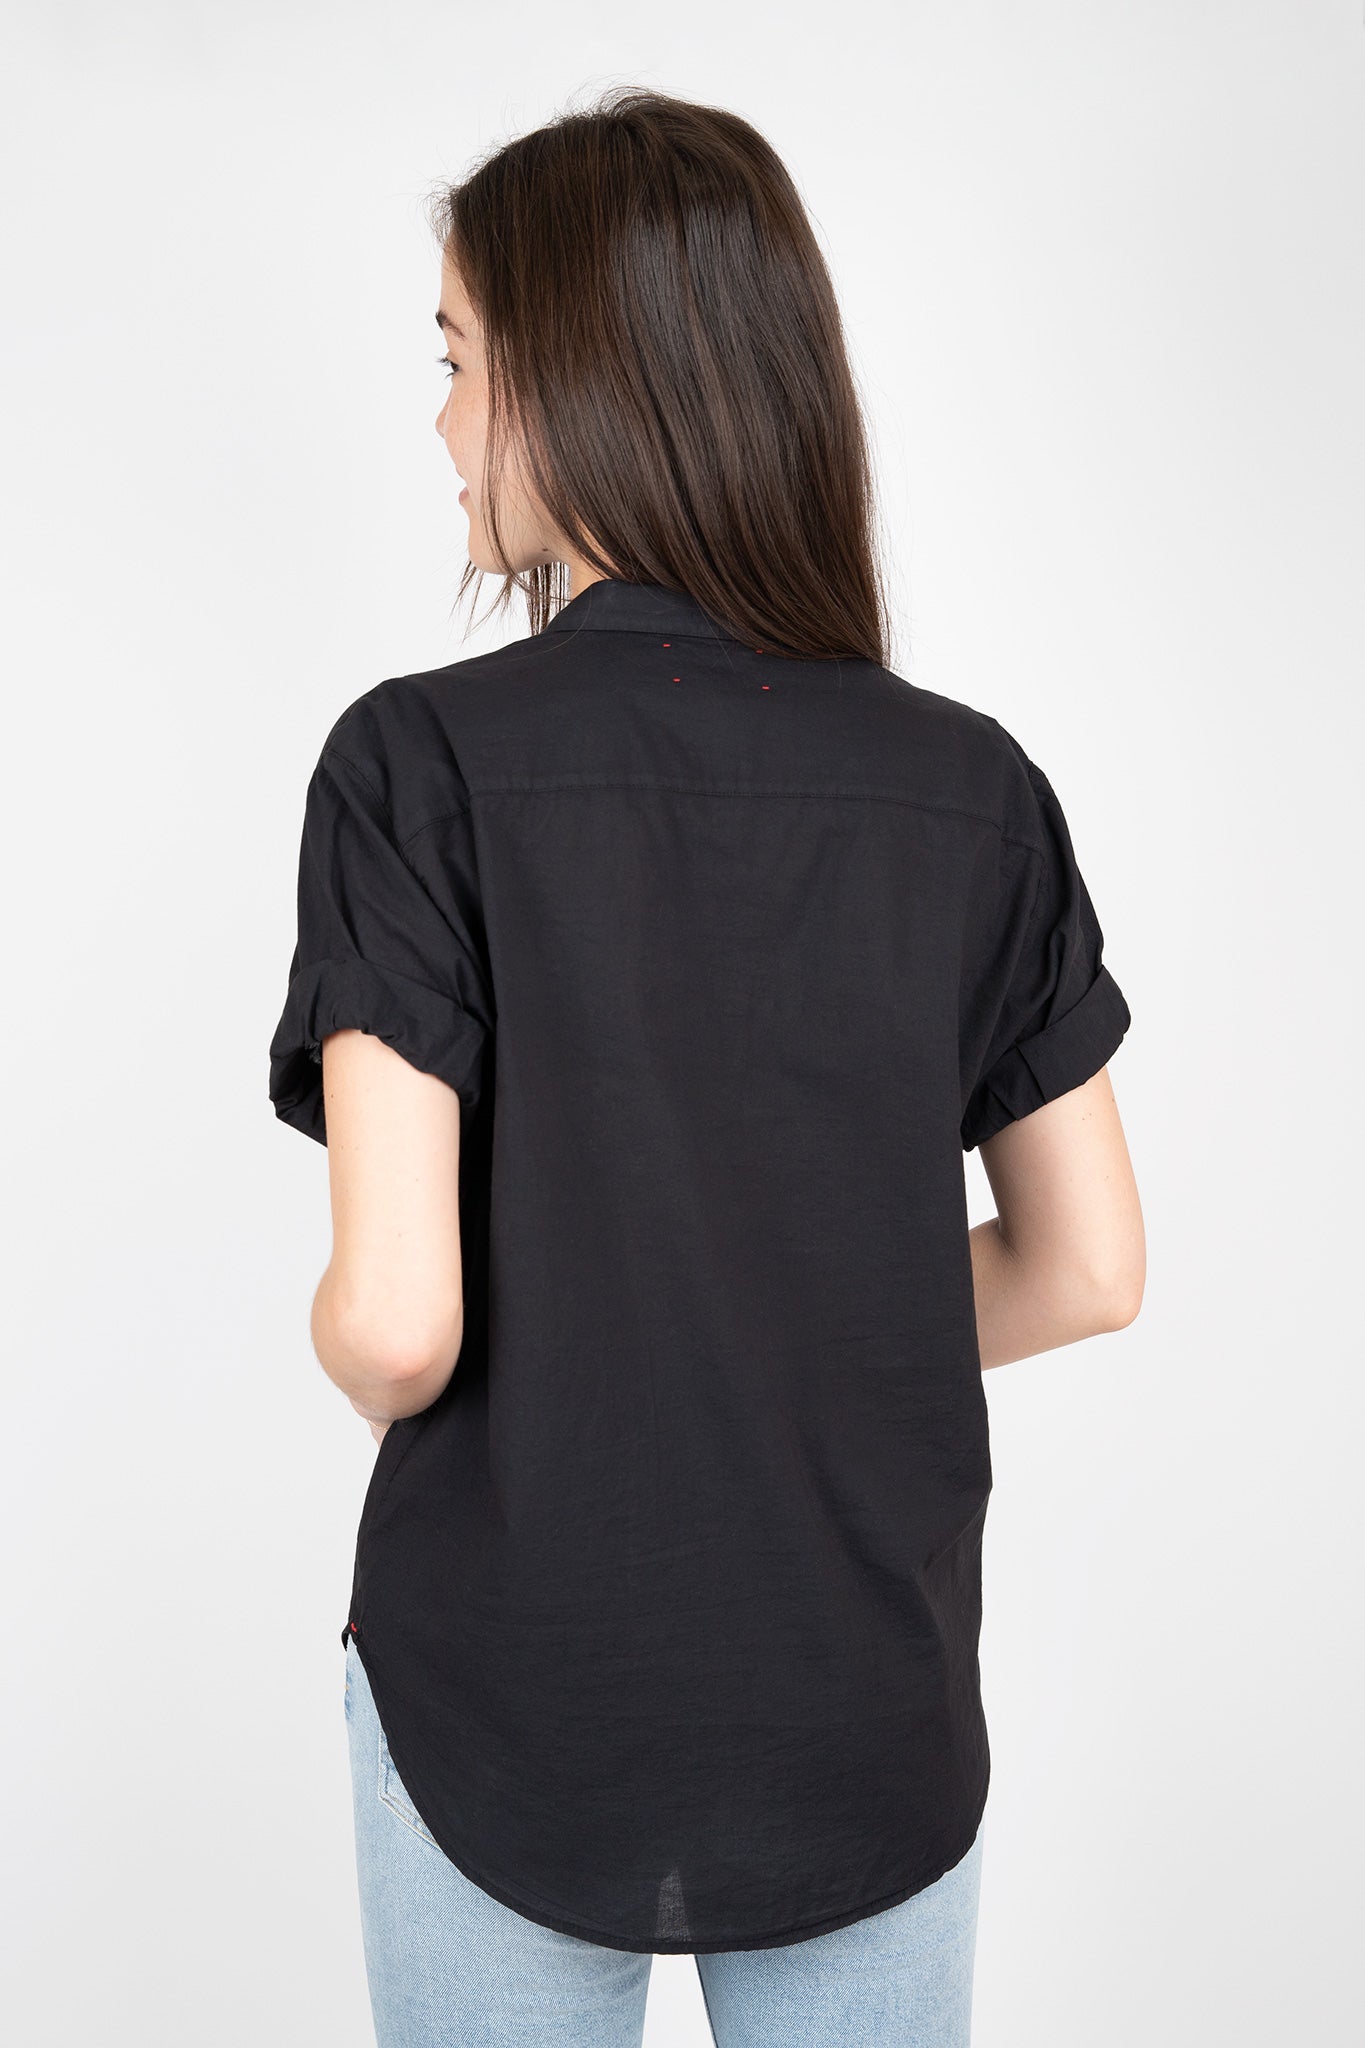 Xirena-Channing-Shirt-Black